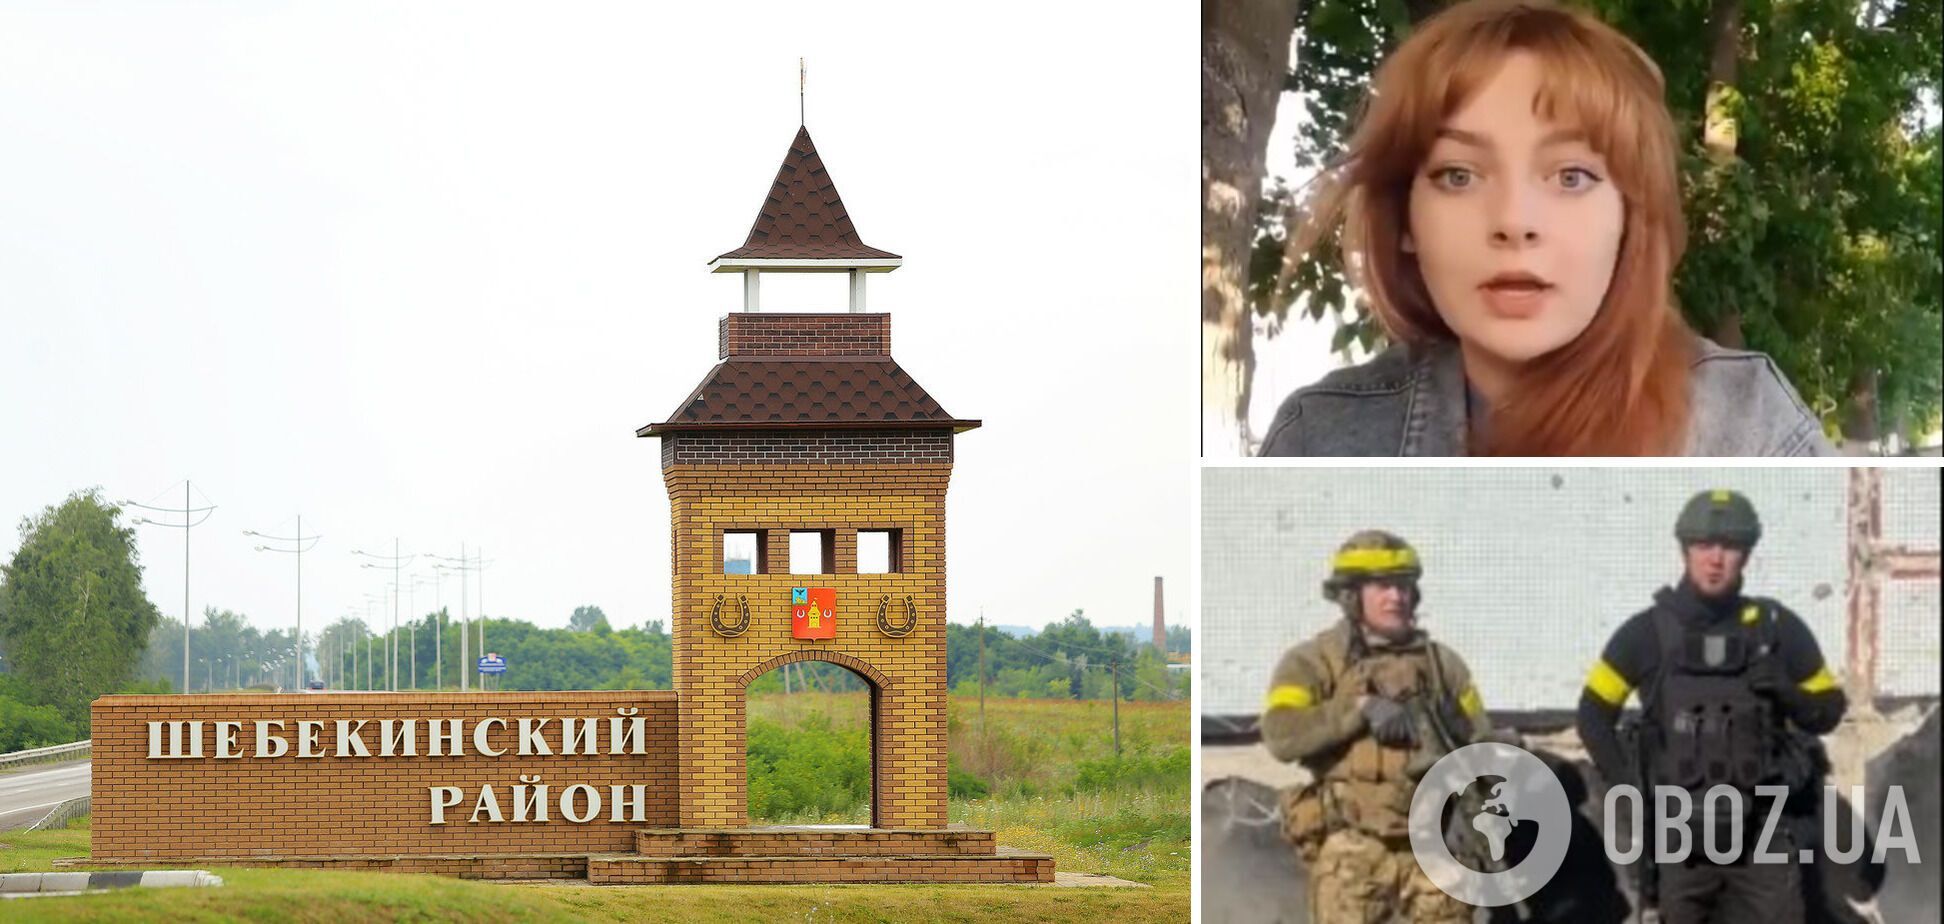 'Вибігали з будинків у білизні': росіянки поскаржилися на 'бомбардування'  Шебекіно і заявили, що це 'ламає психіку'. Відео 